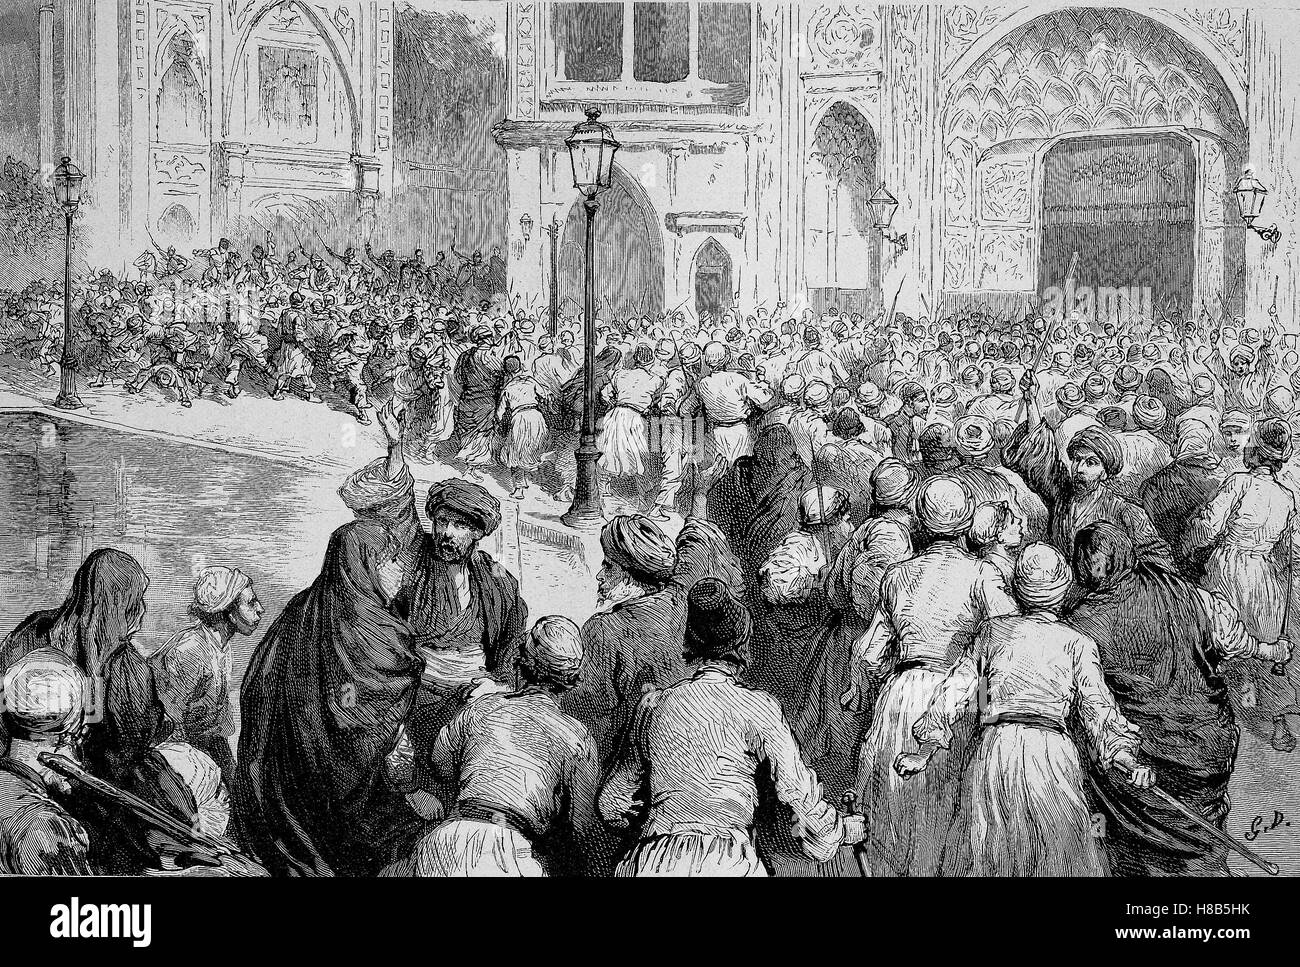 La révolte du tabac en Perse. Foule devant le palais du Shah appelle à la levée du monopole, gravure sur bois de 1892 Banque D'Images